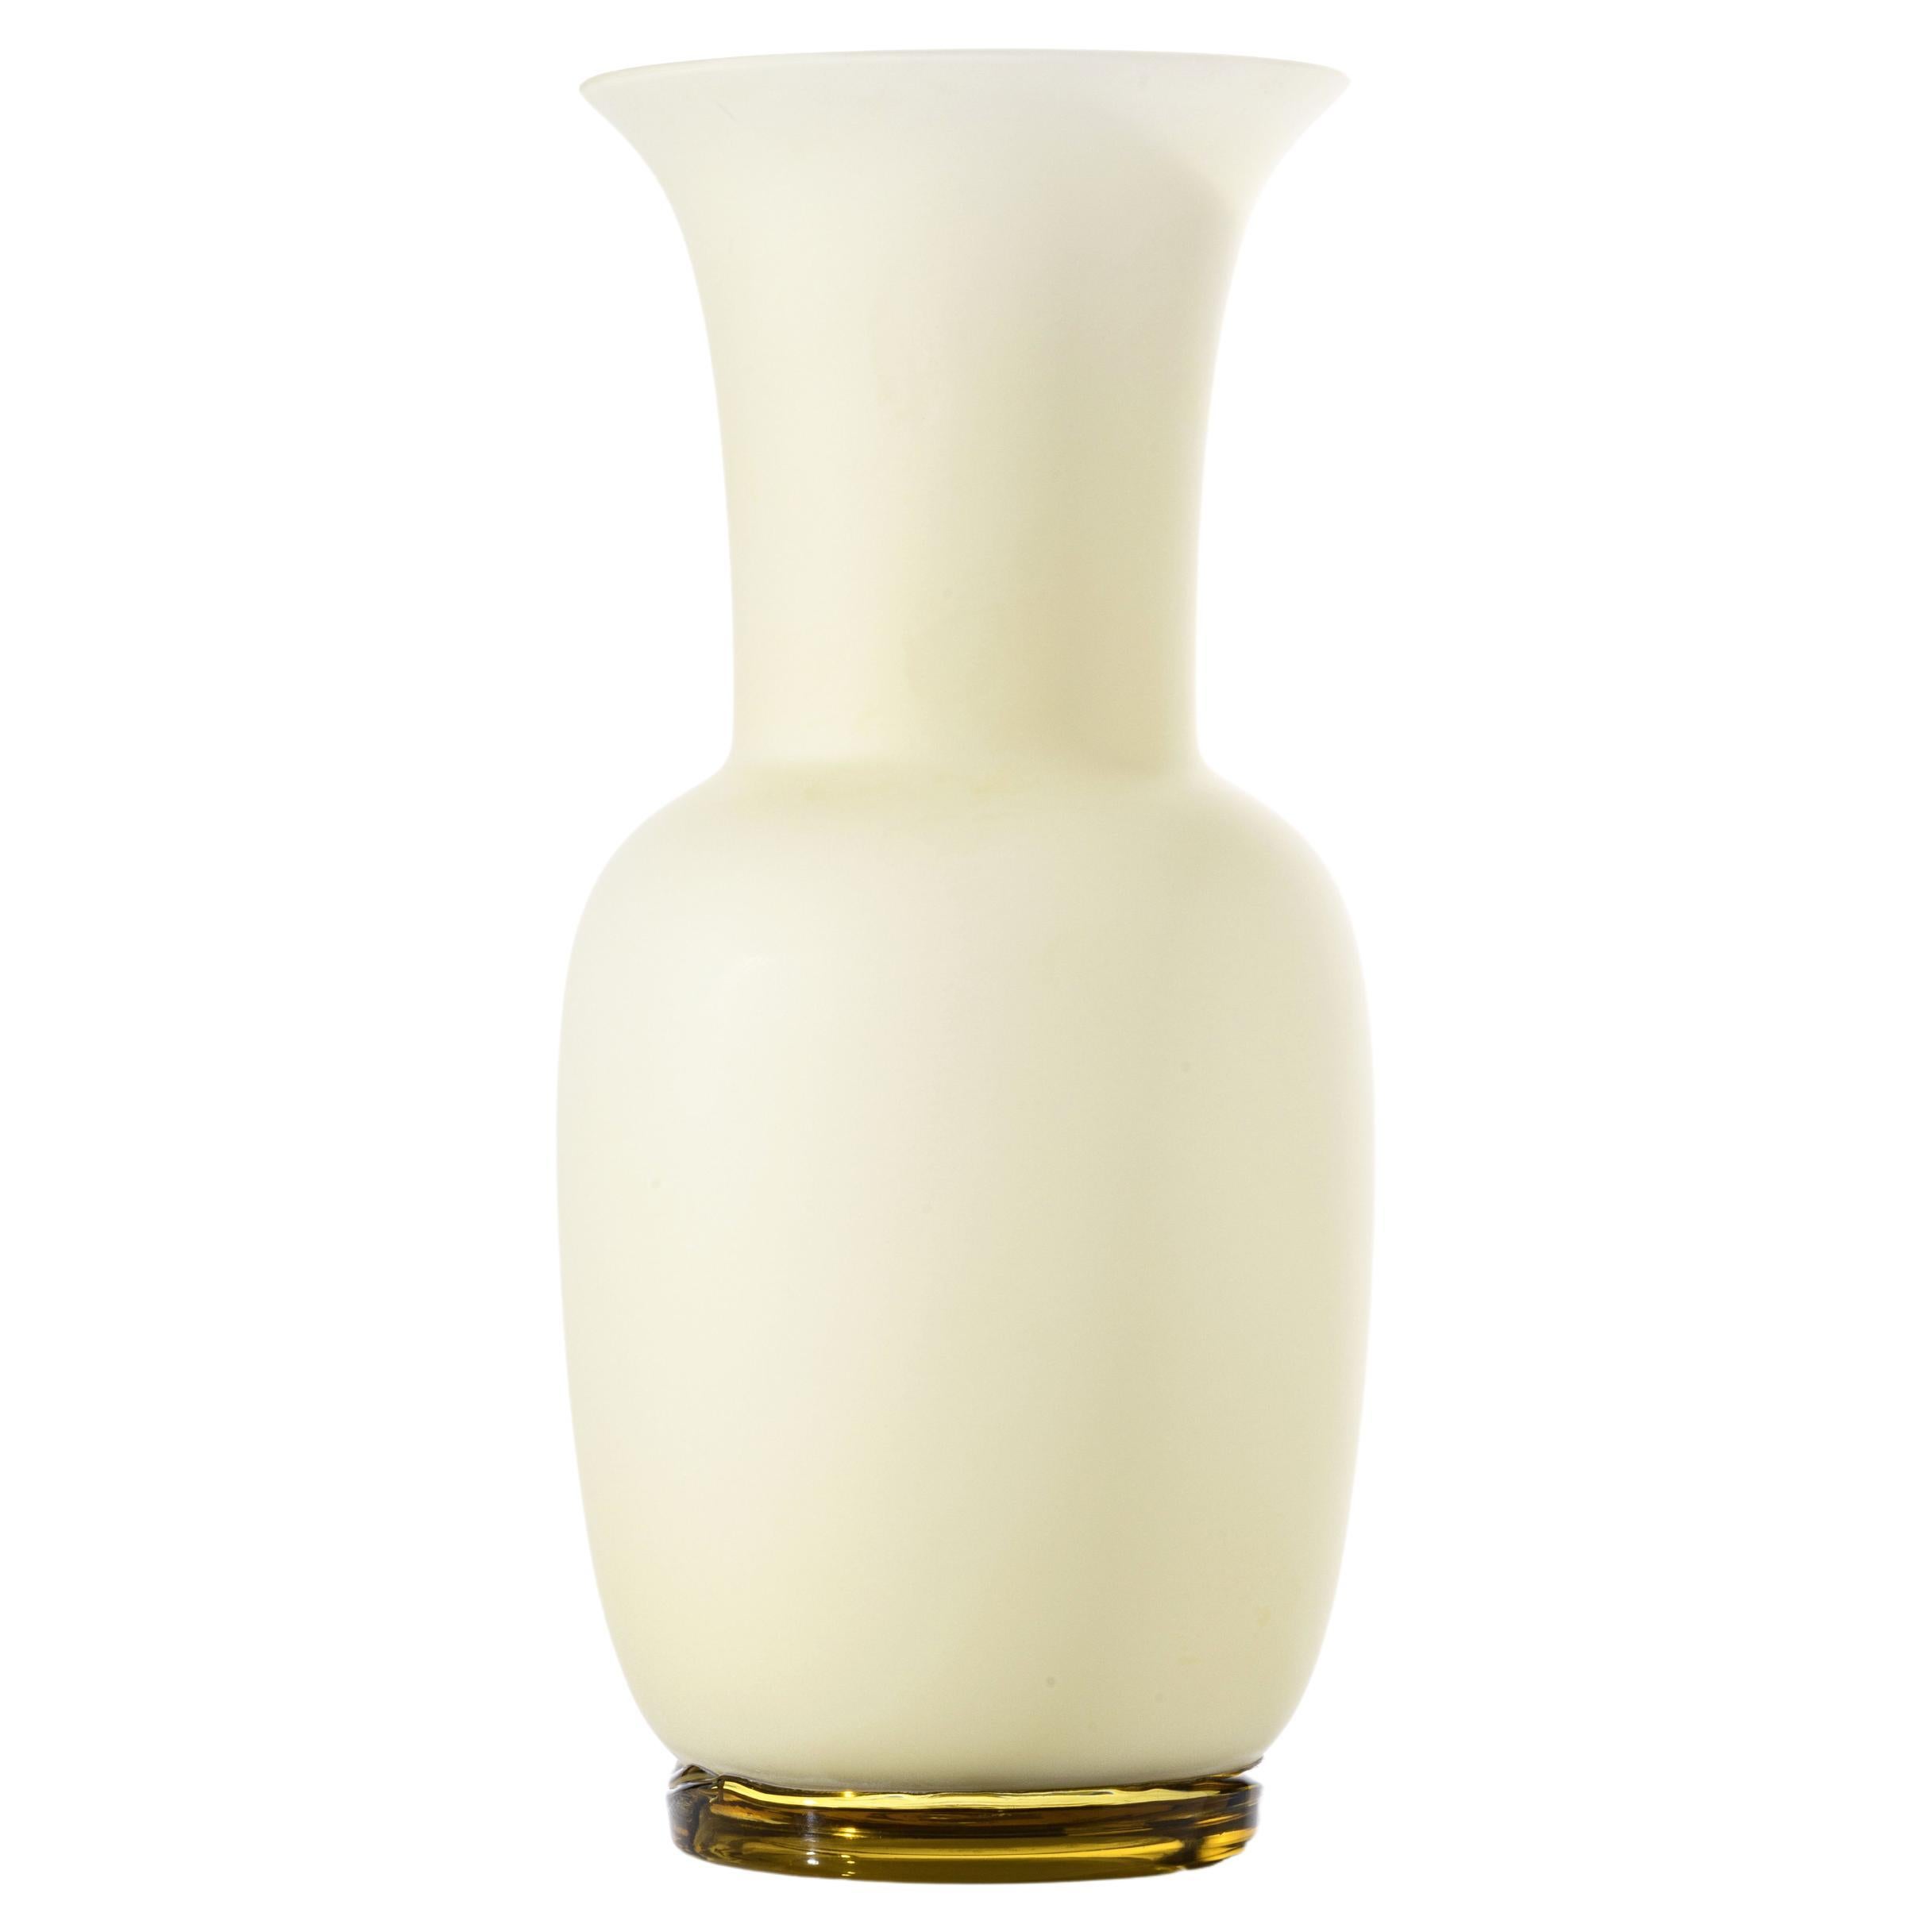 Opalino Sabbiato Glass Vase in Lattimo by Venini